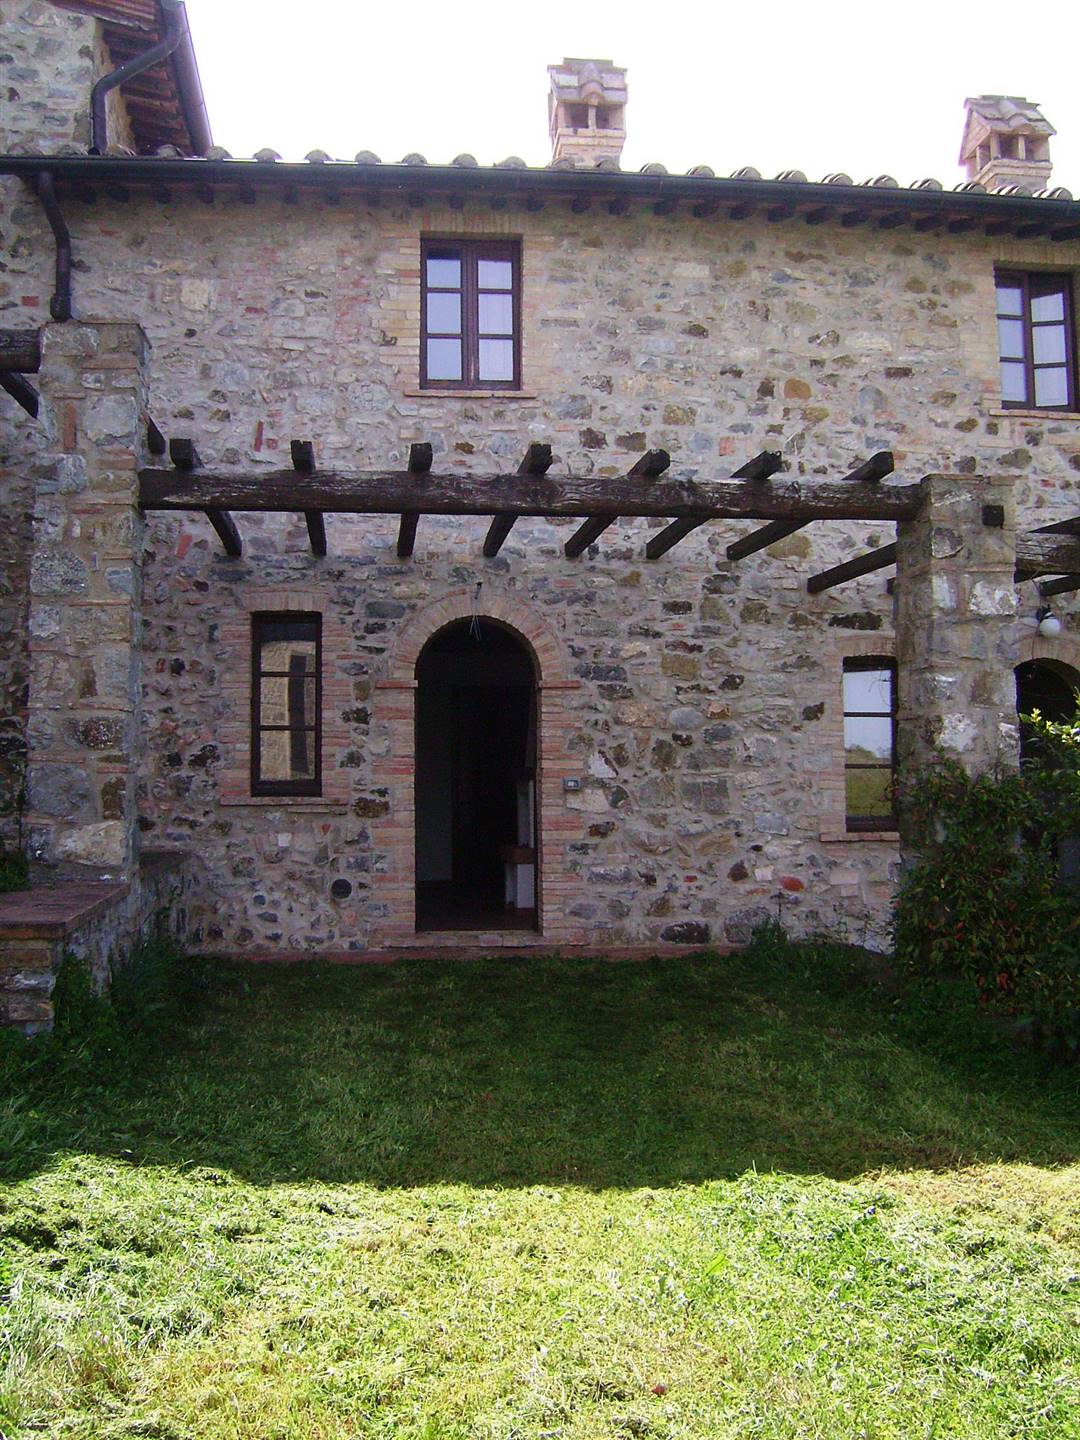 Rustico / Casale in vendita a Roccalbegna, 2 locali, zona Zona: Triana, prezzo € 135.000 | CambioCasa.it